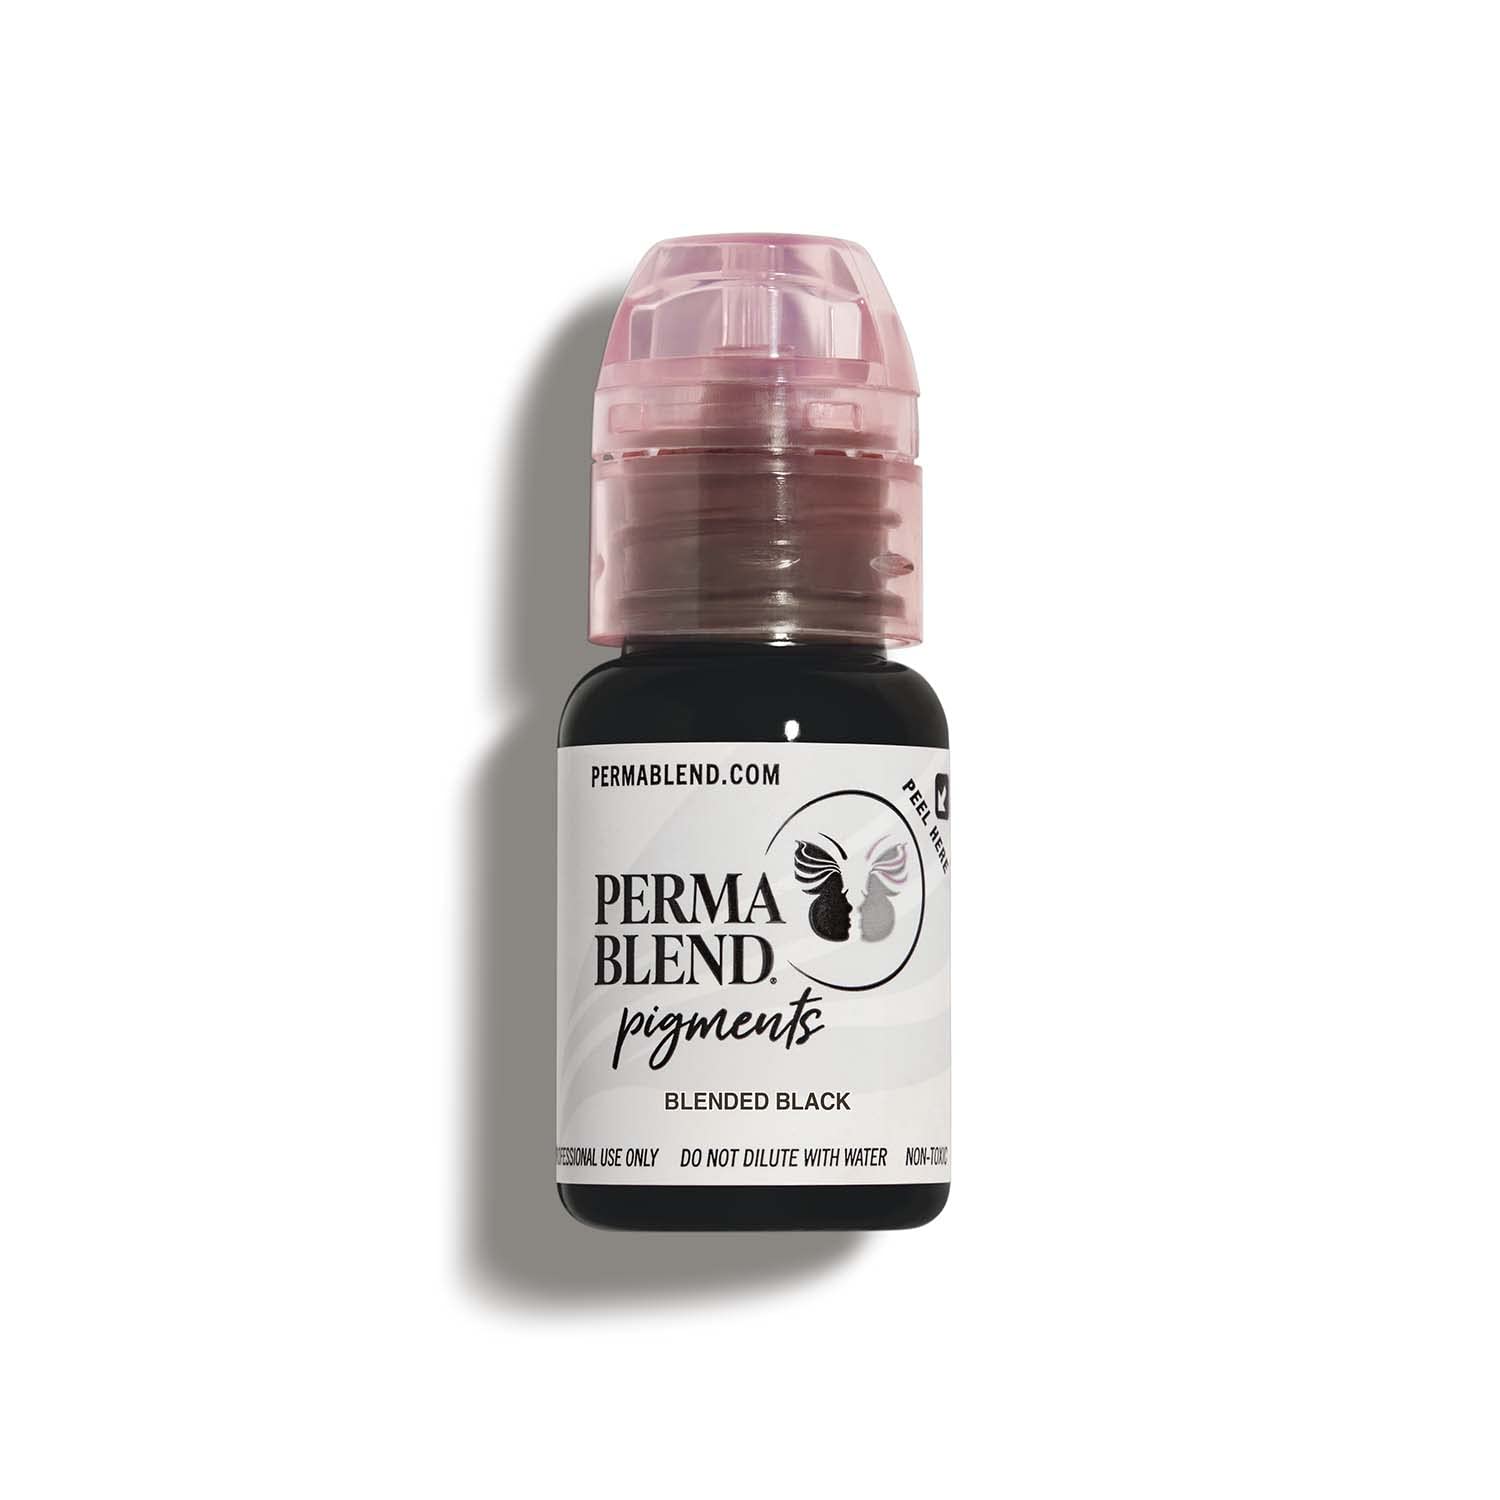 Blended Black, eyeliner pigment for permament makeup by Perma Blend